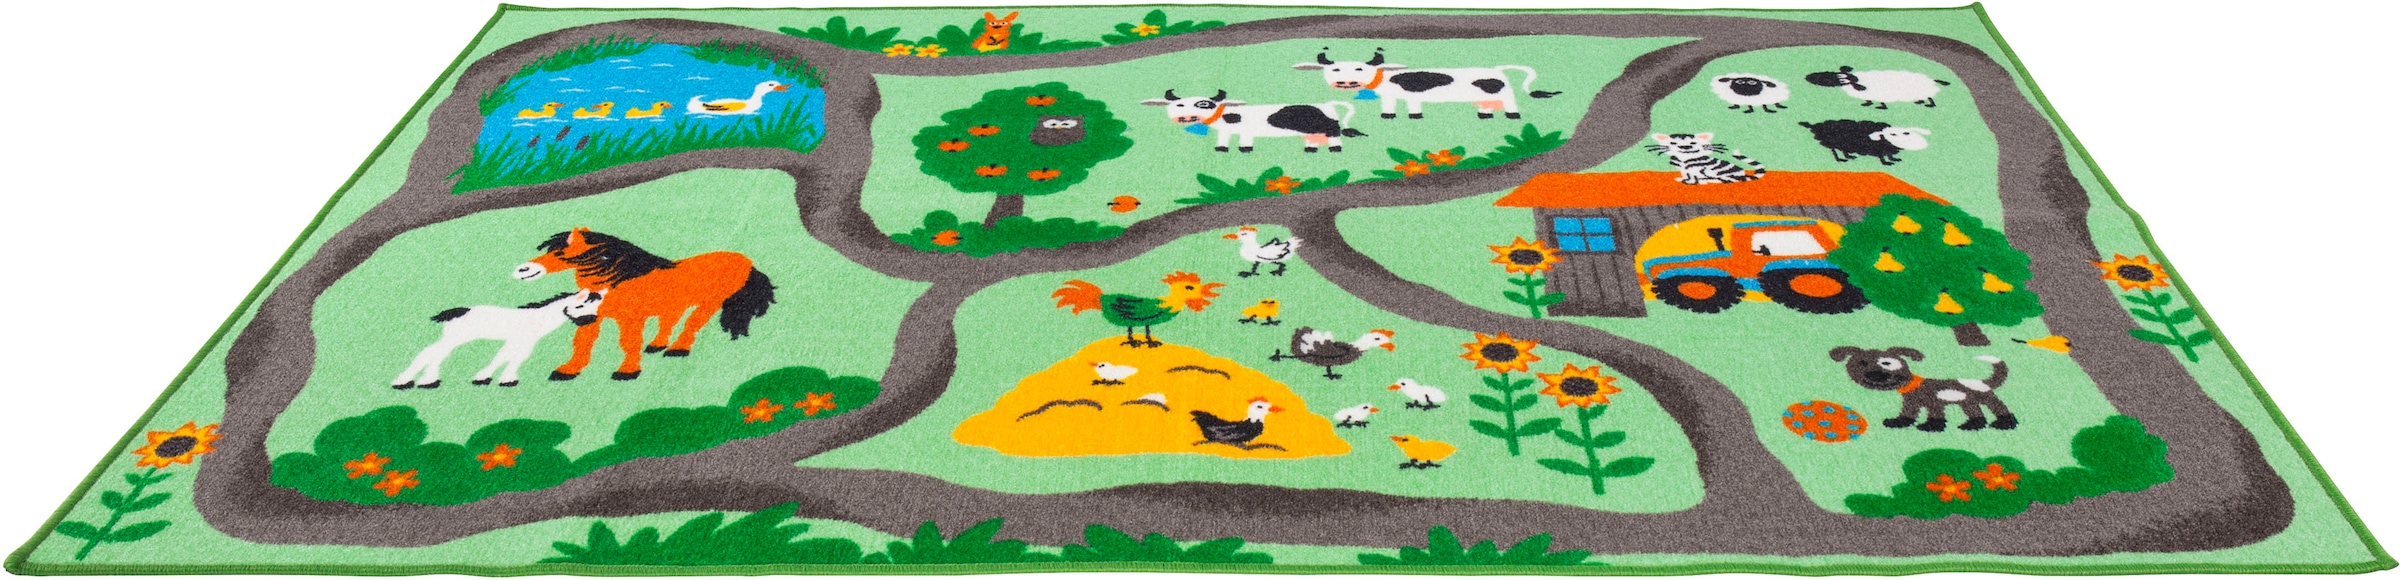 Andiamo Kinderteppich "Farmstead", rechteckig, Spiel- und Straßenteppich, Motiv Bauernhof, Kinderzimmer